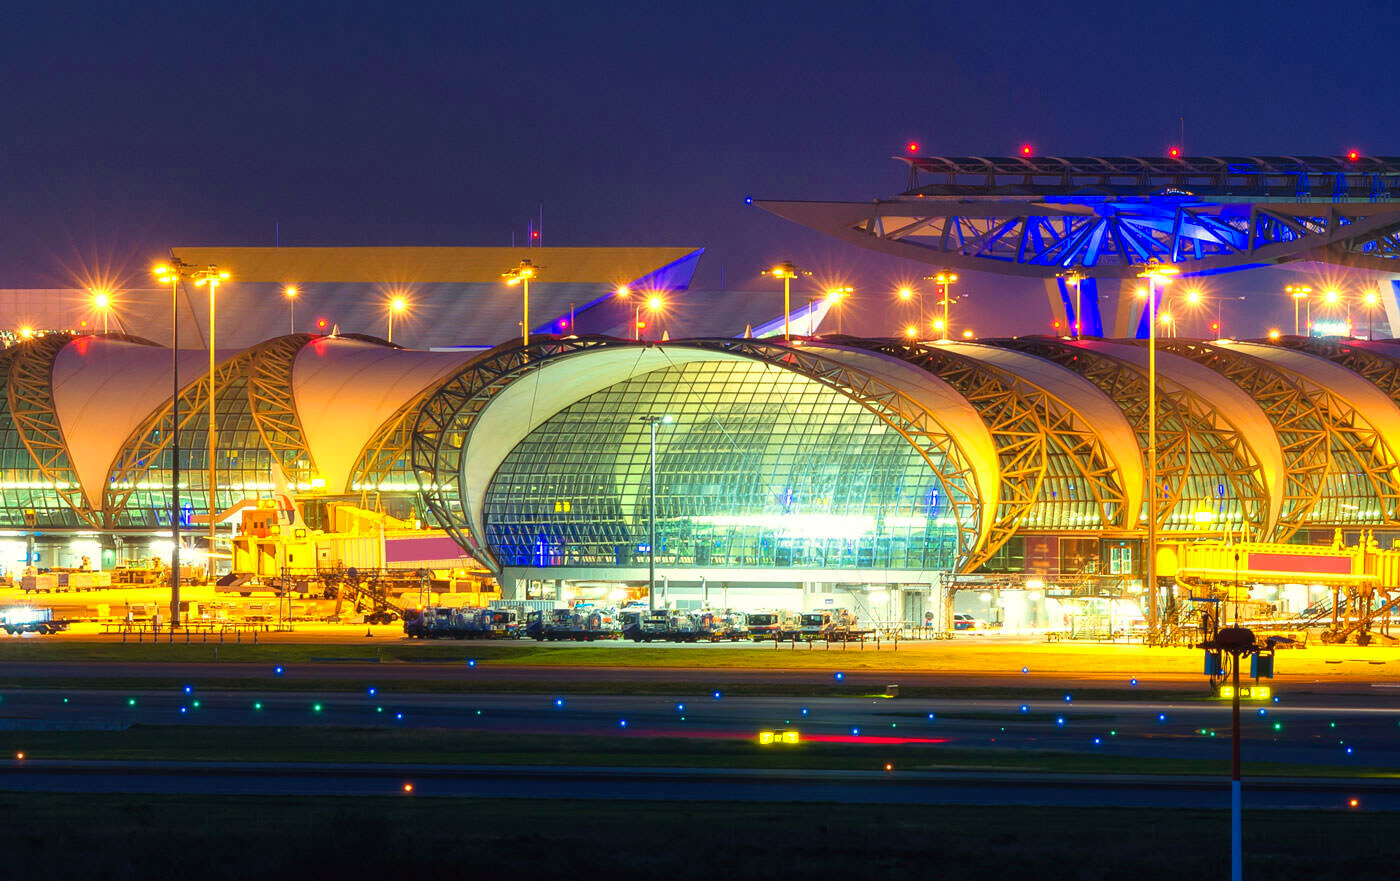 Lotnisko Don Mueang i Suvarnbhumi, ważny węzeł lotniczy